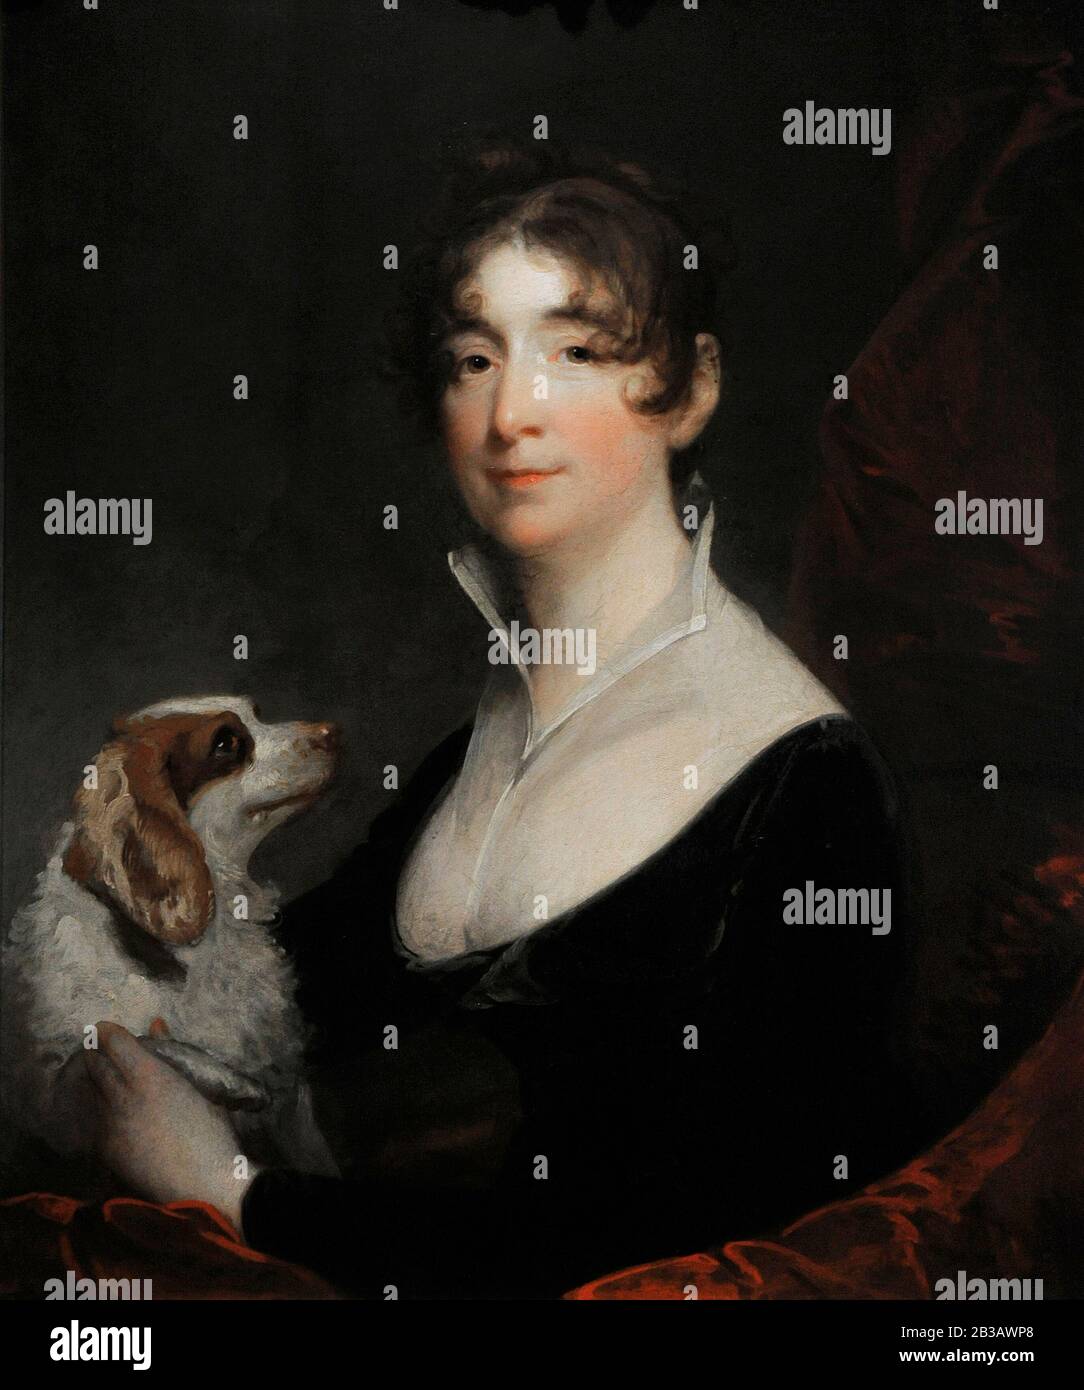 Gilbert Stuart (1755-18285). Amerikanischer Maler. Porträt der Frau von Anthony Merry, 1805. Lazaro Galdiano Museum. Madrid. Spanien. Stockfoto